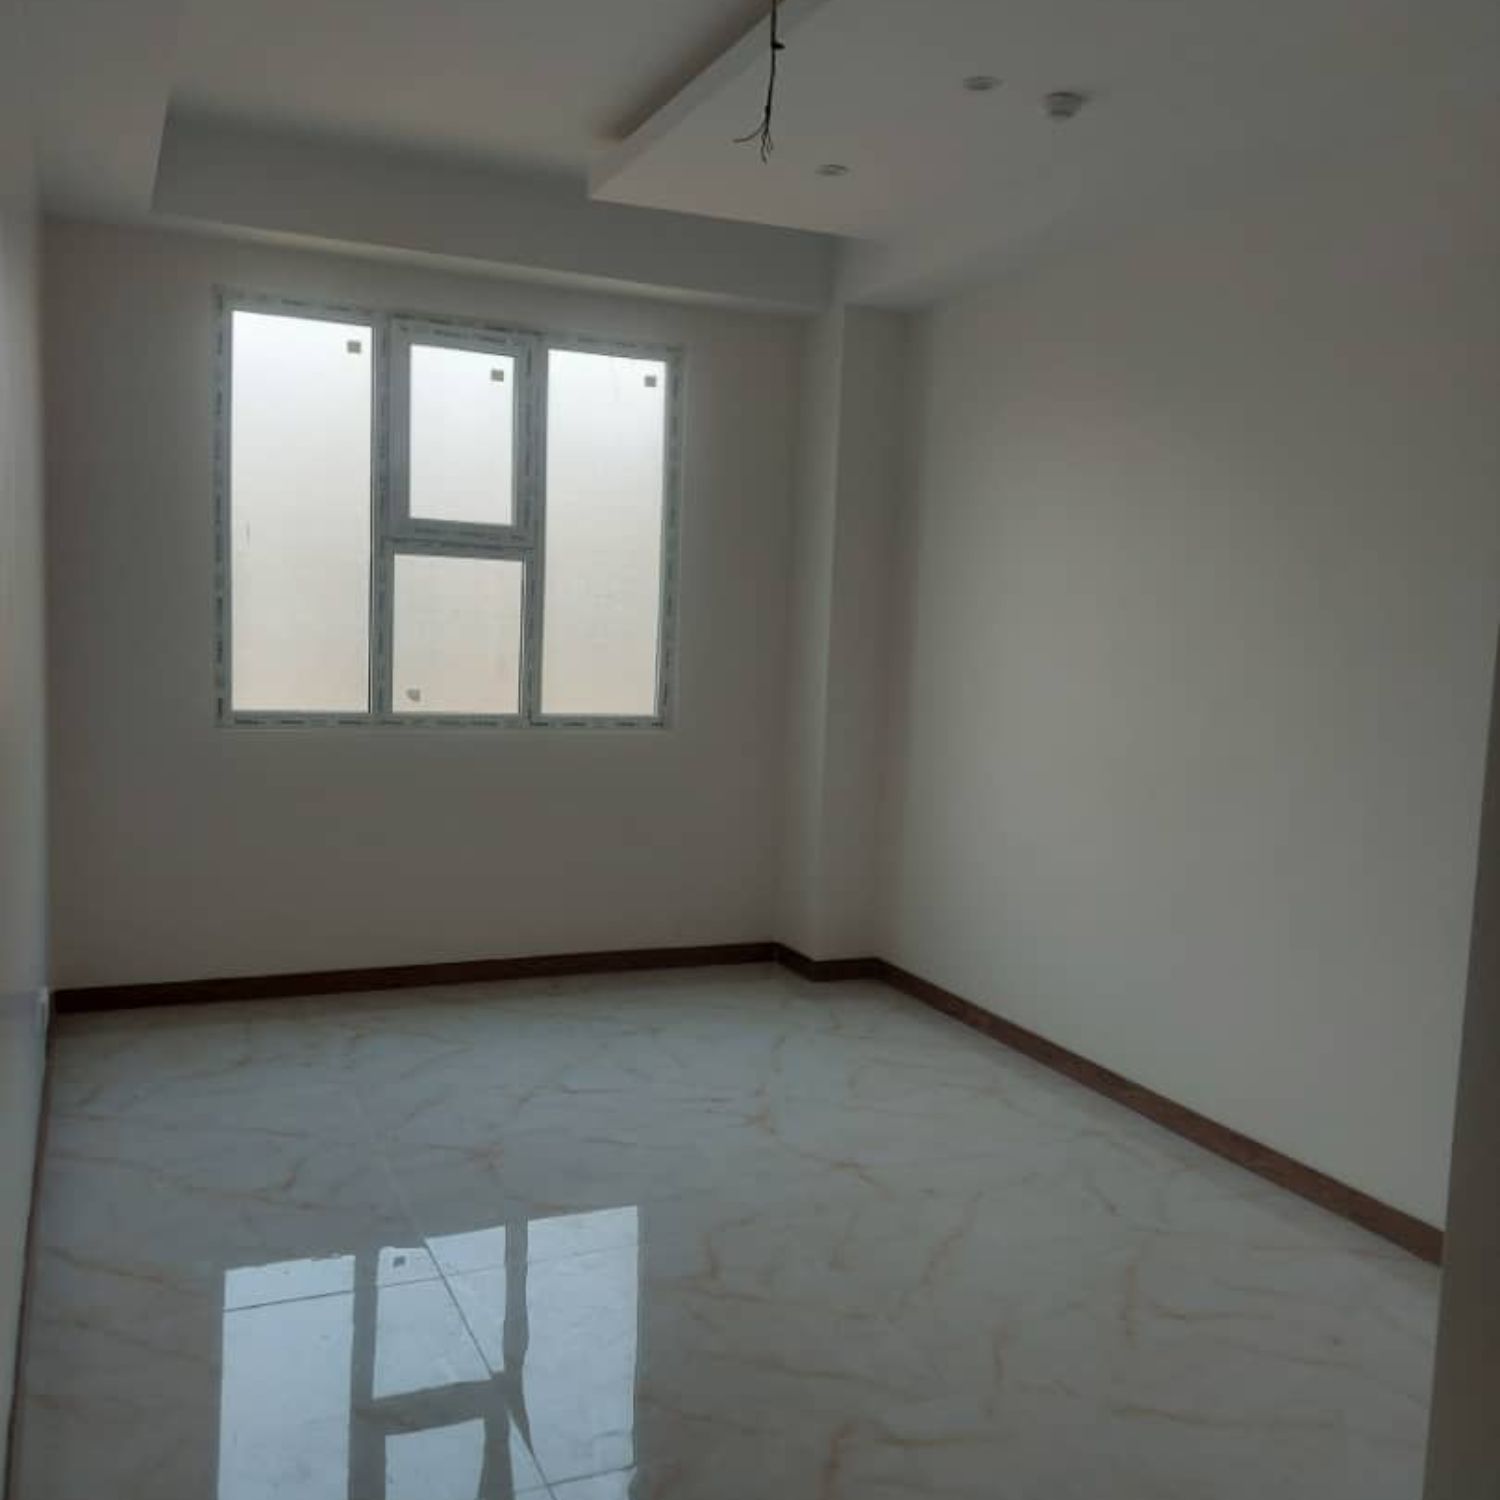 آپارتمان مسکونی - 115 متر - گاندی